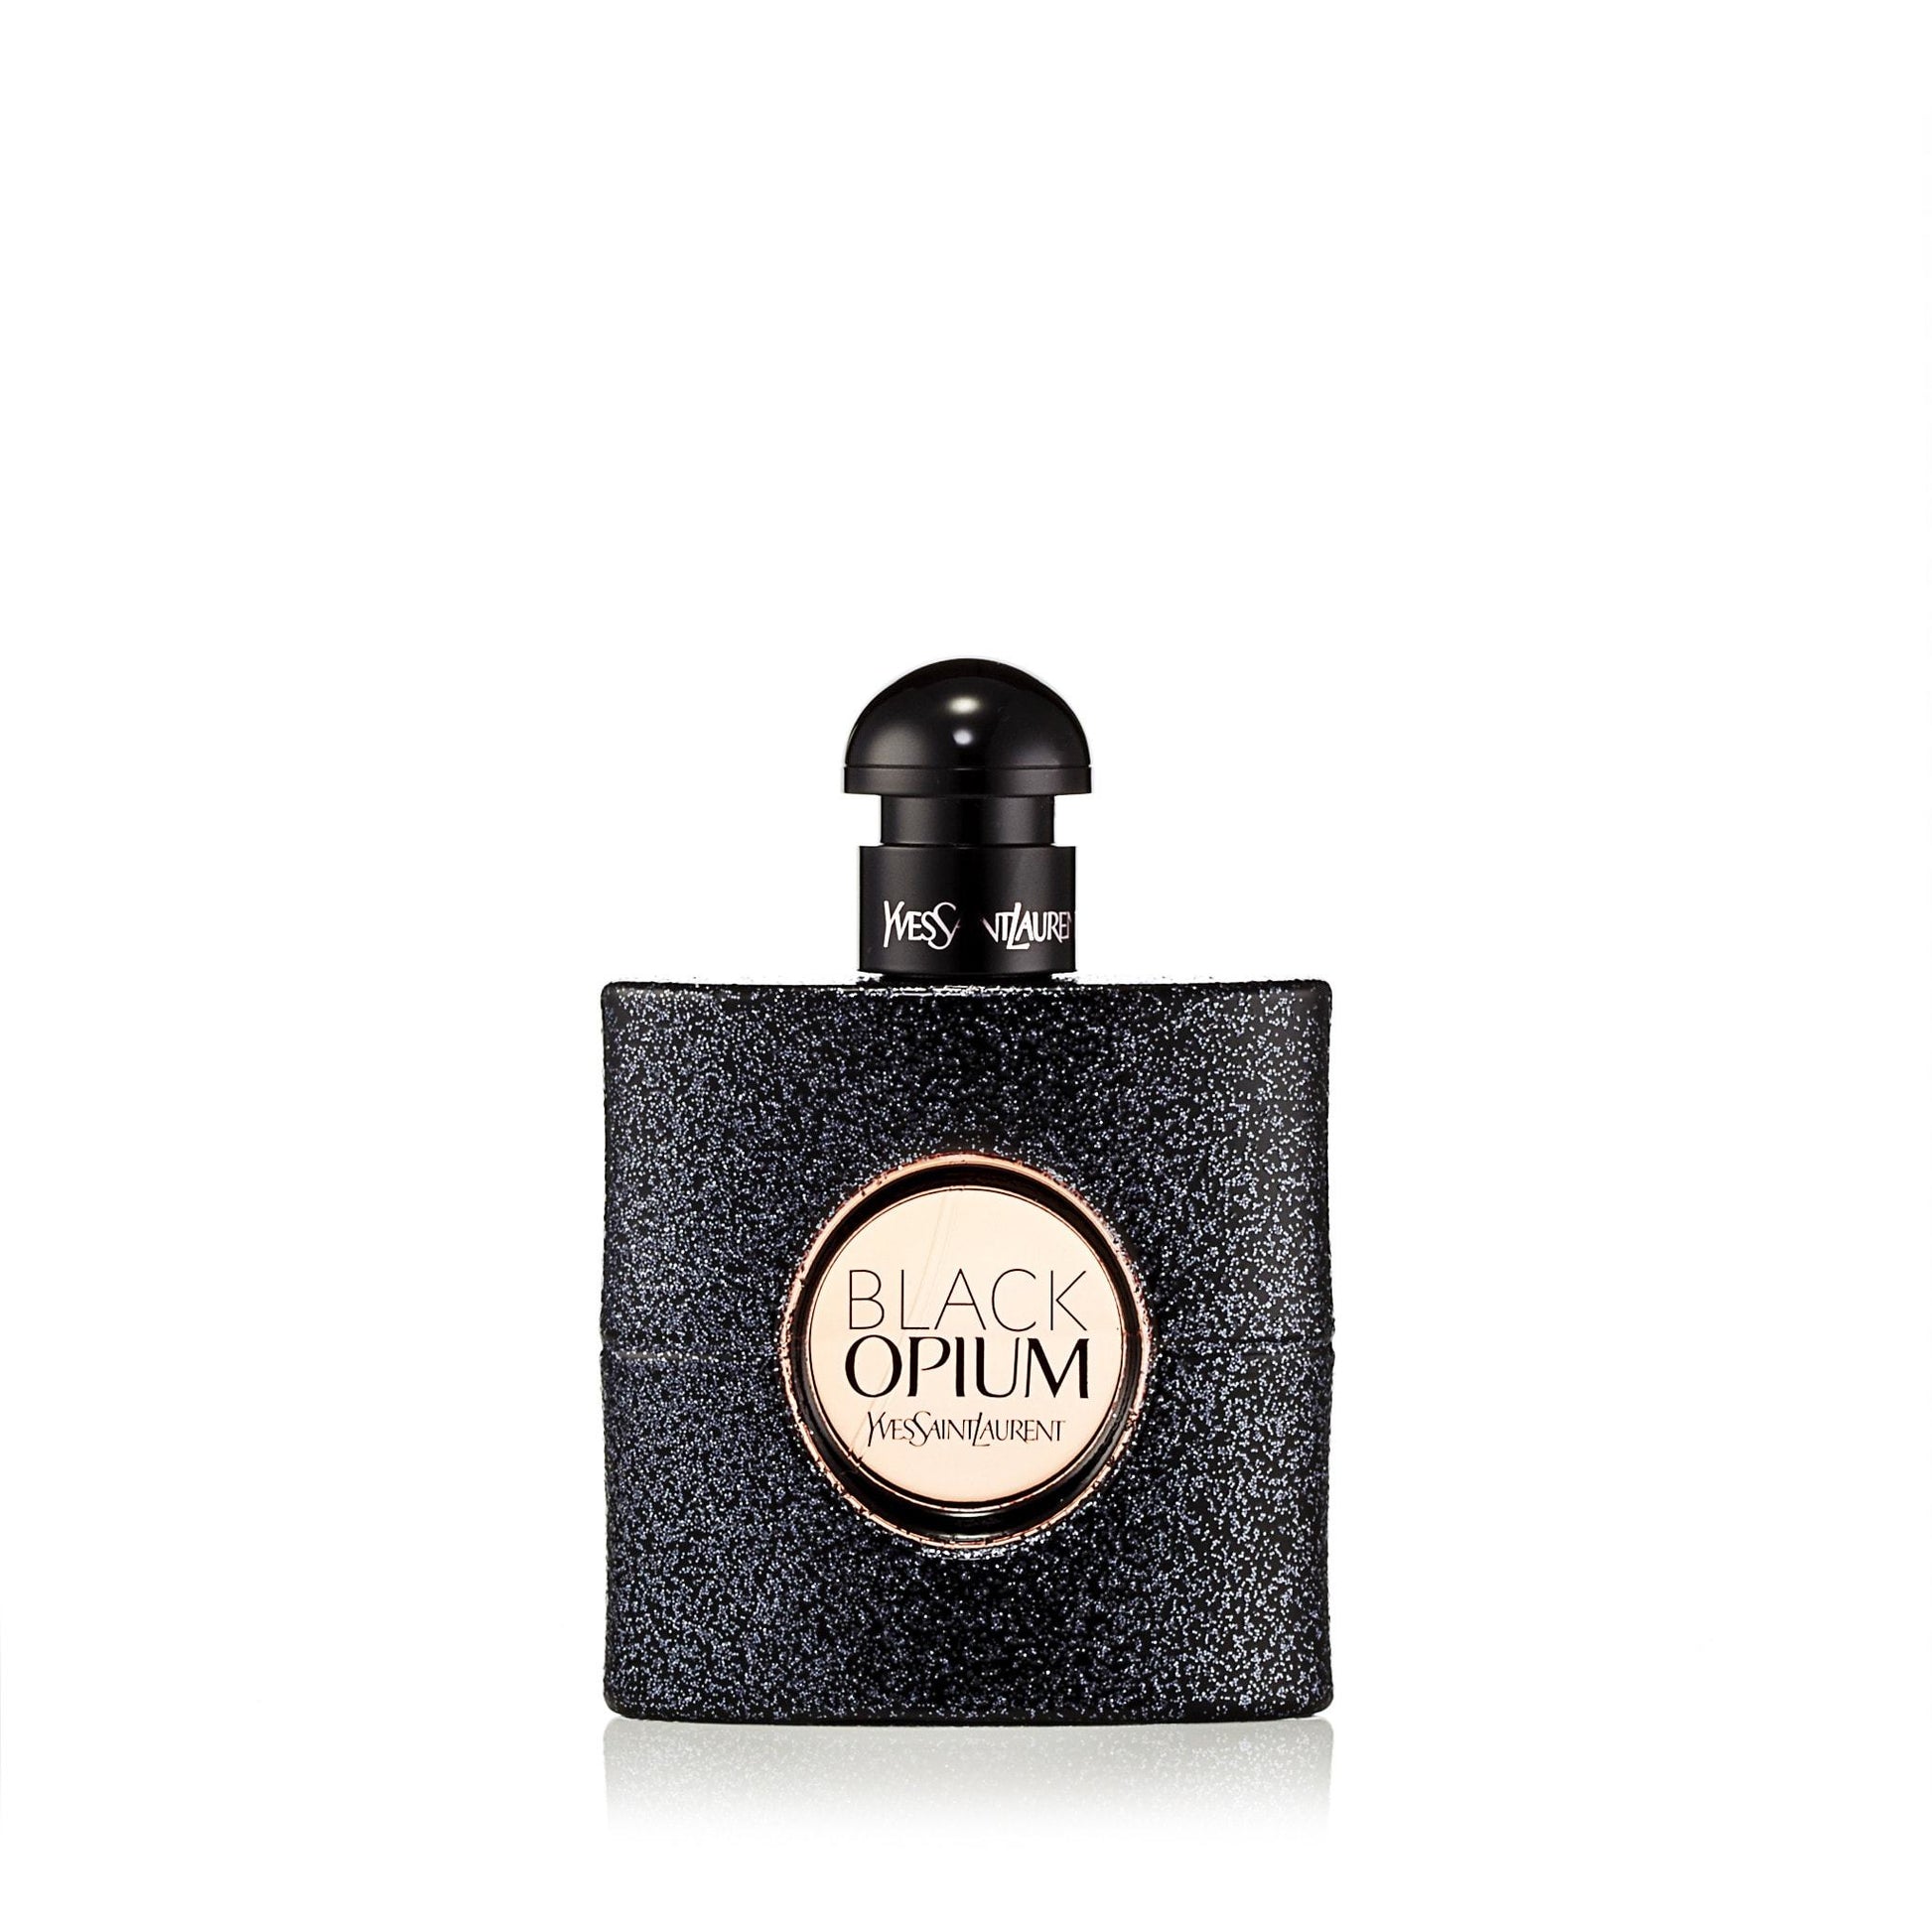 Black Opium Eau de Parfum Spray for Women by Yves Saint Laurent, Product image 3